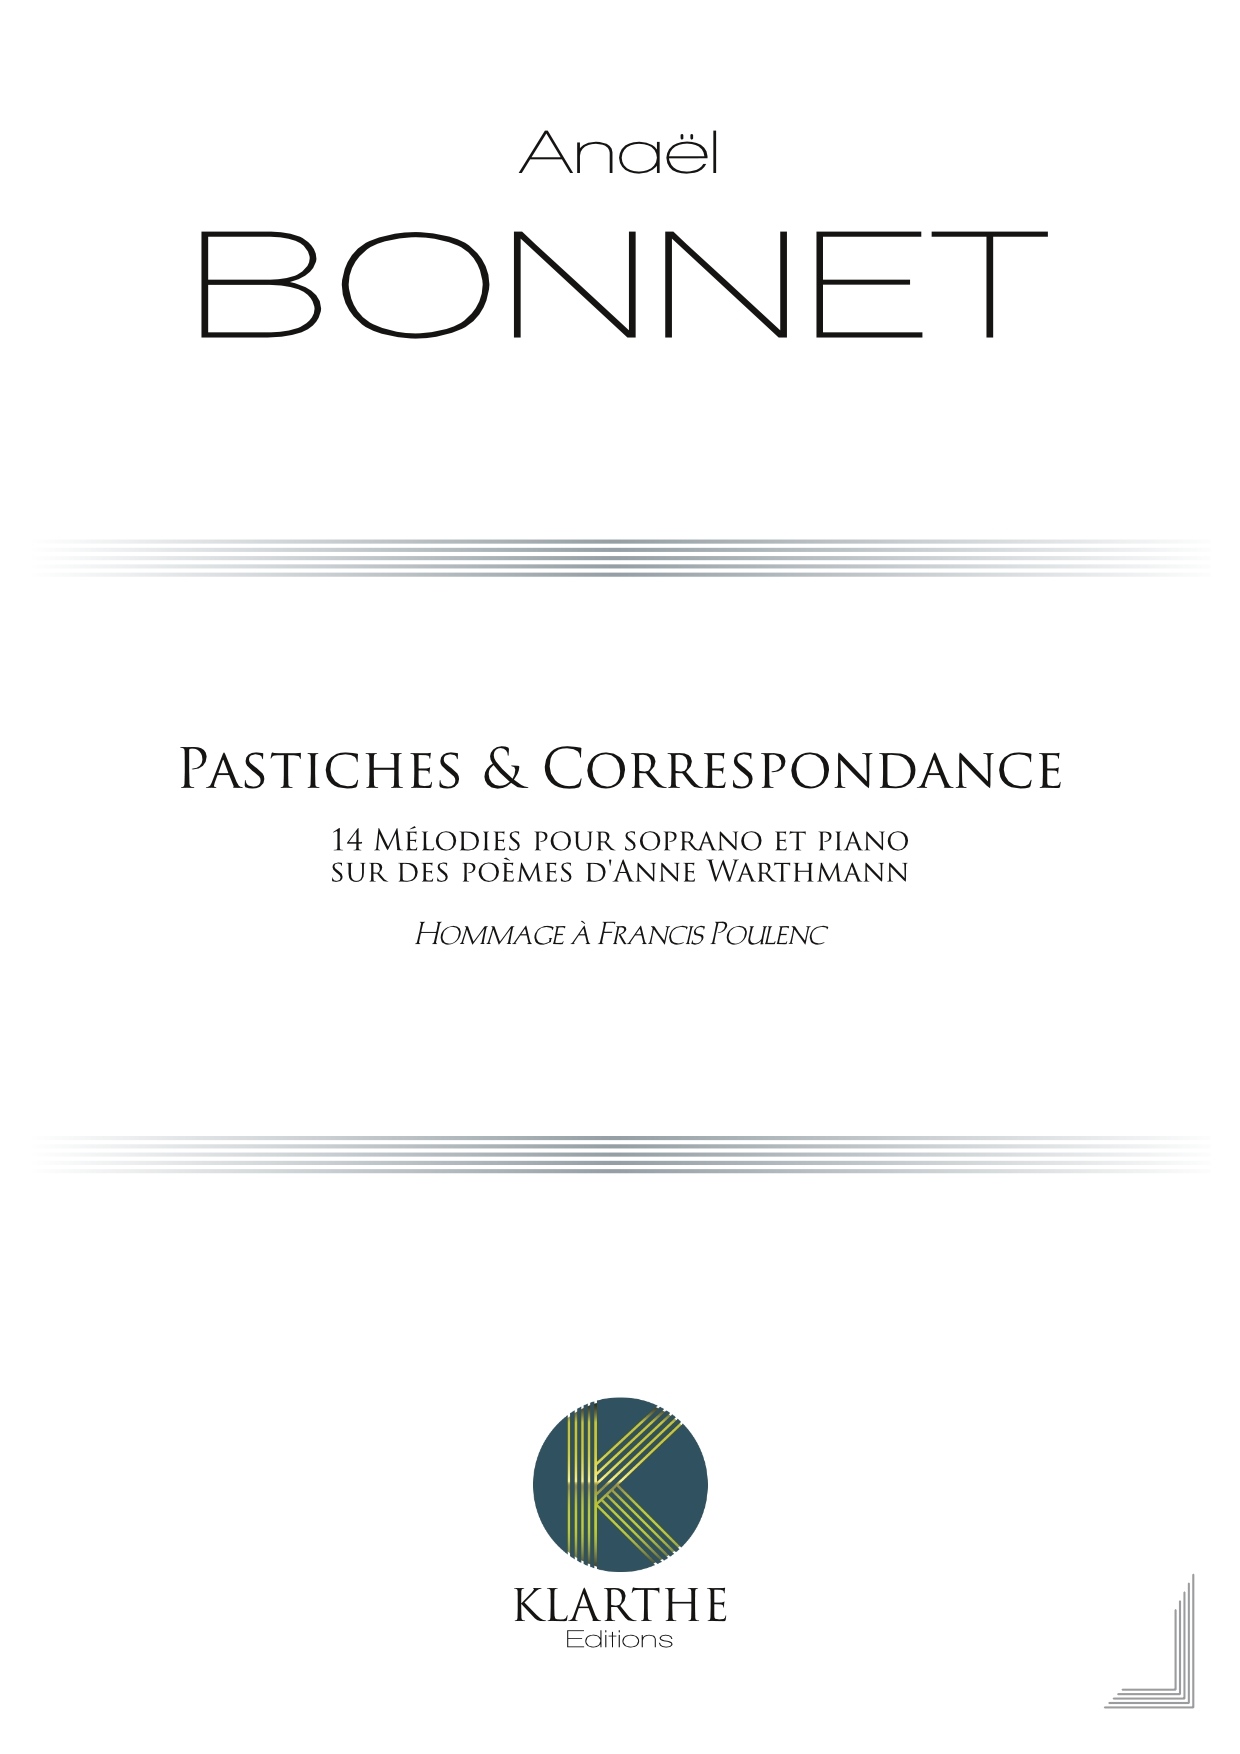 Pastiches et correspondances (BONNET ANAEL)